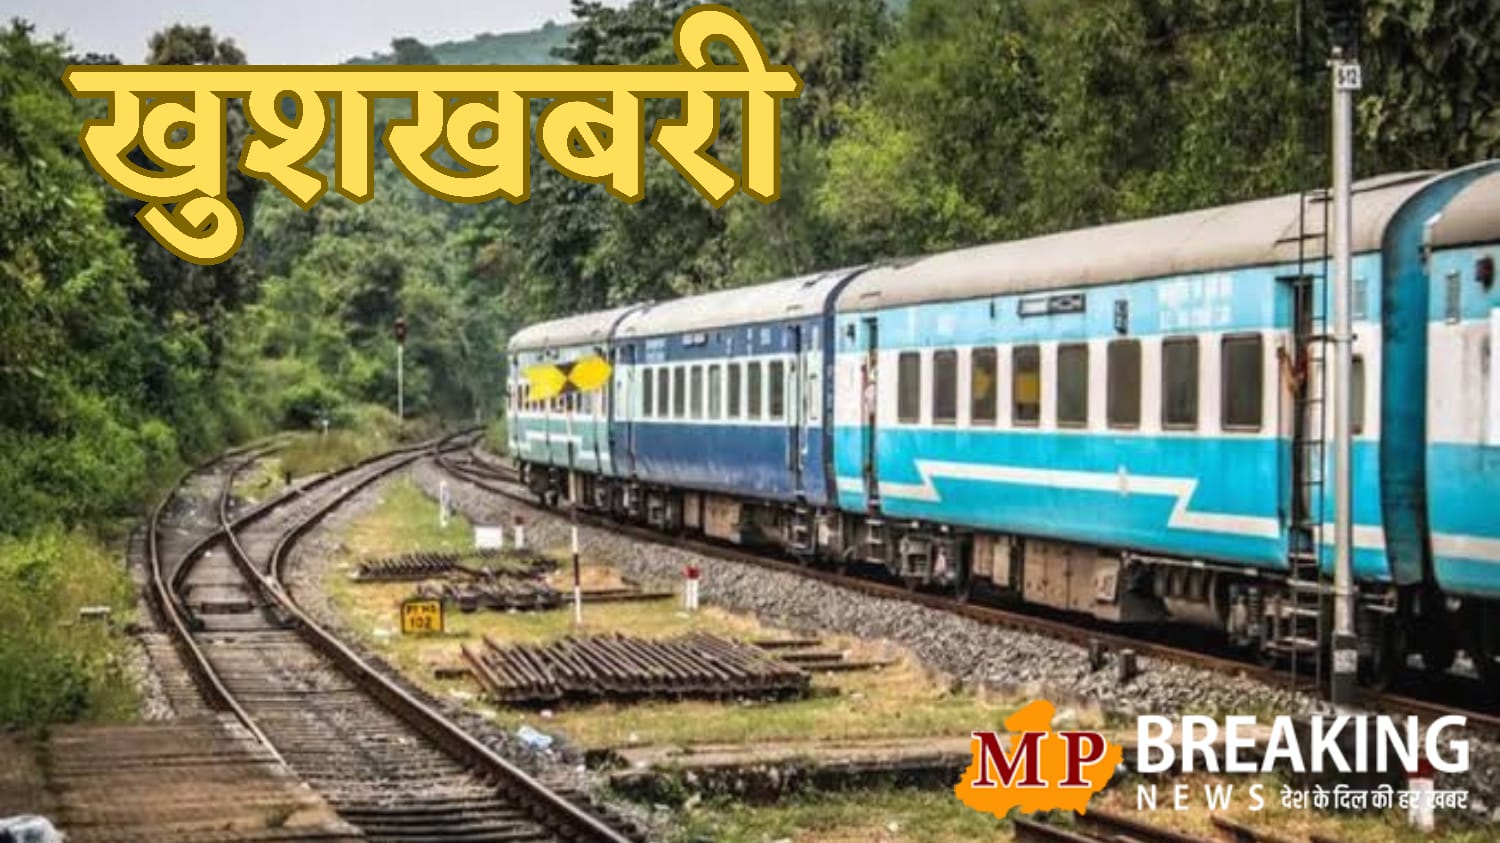 mp rail news